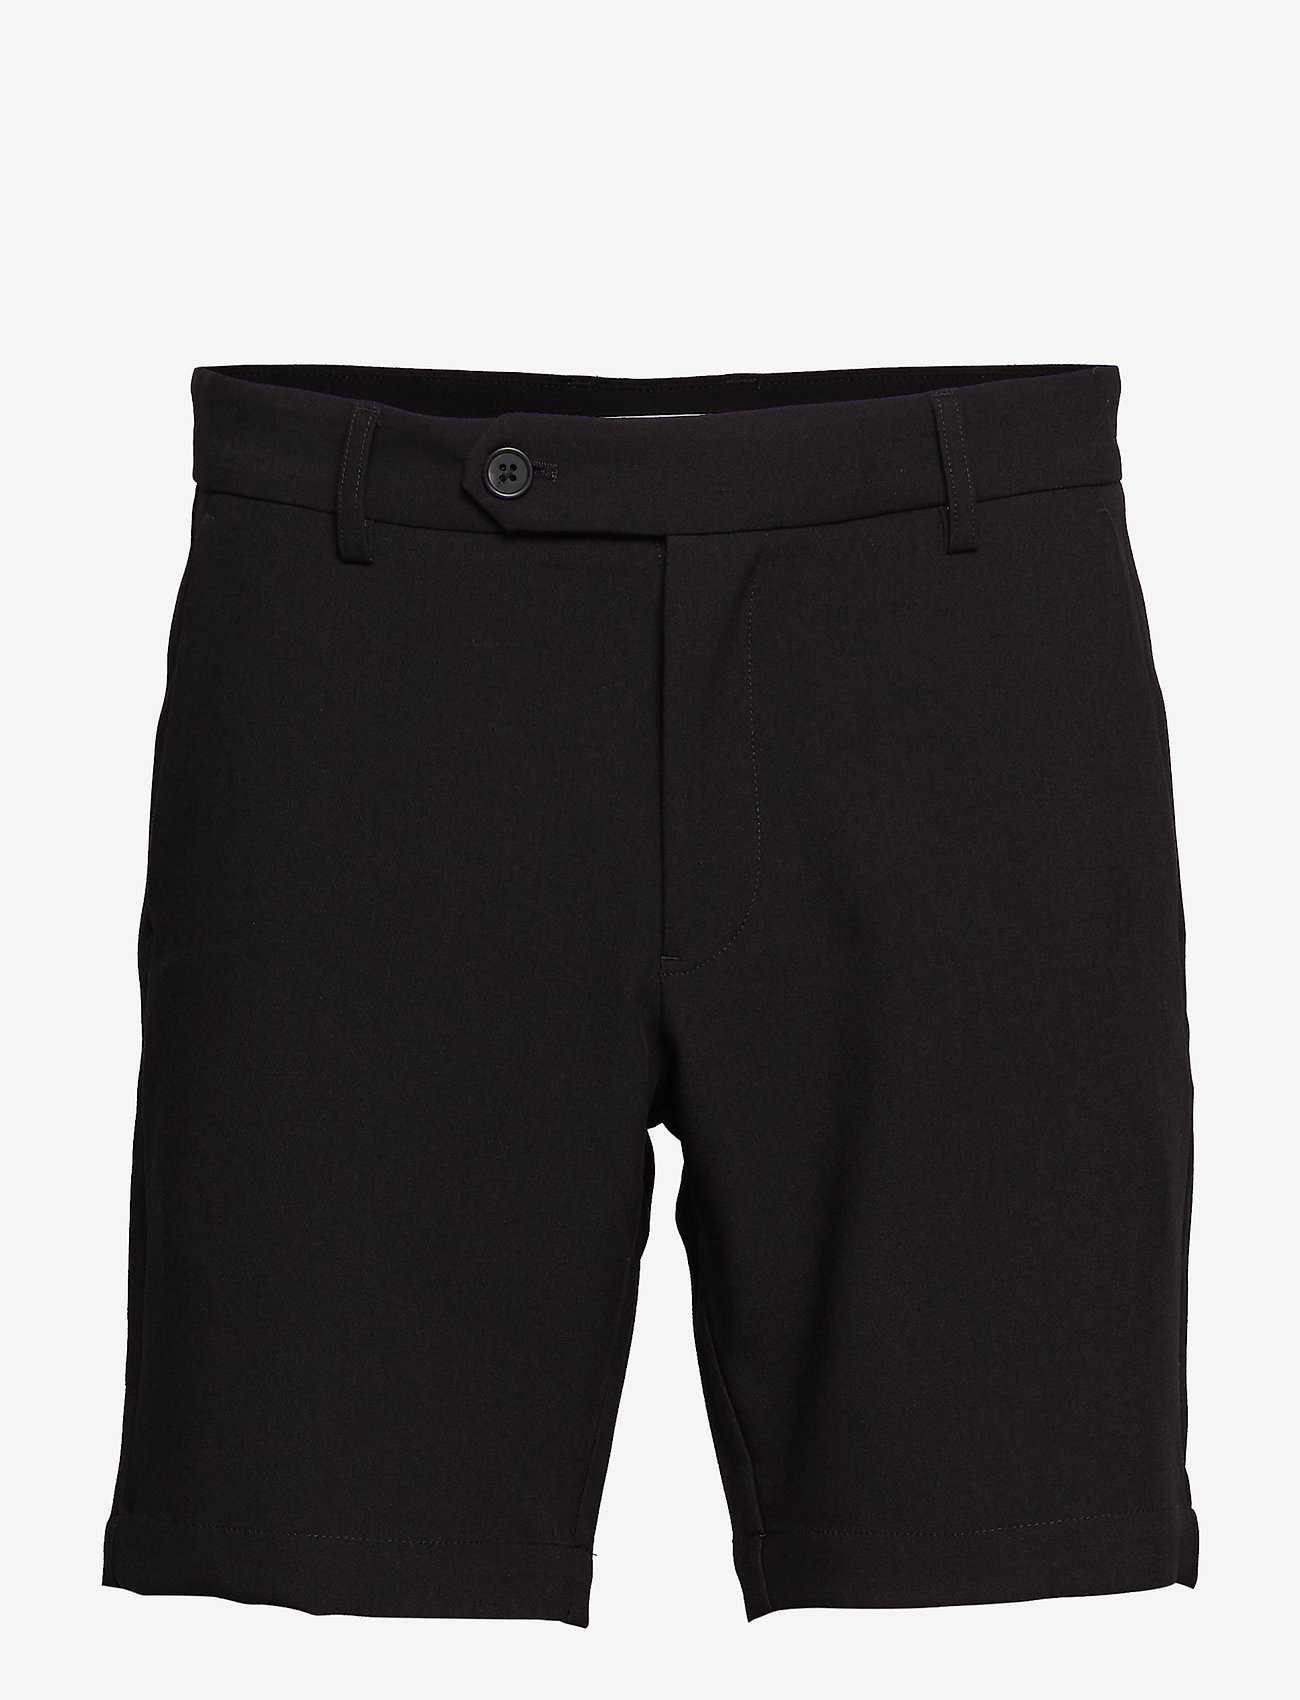 Samsøe Samsøe - Hals shorts 10929 - casual shorts - black - 0